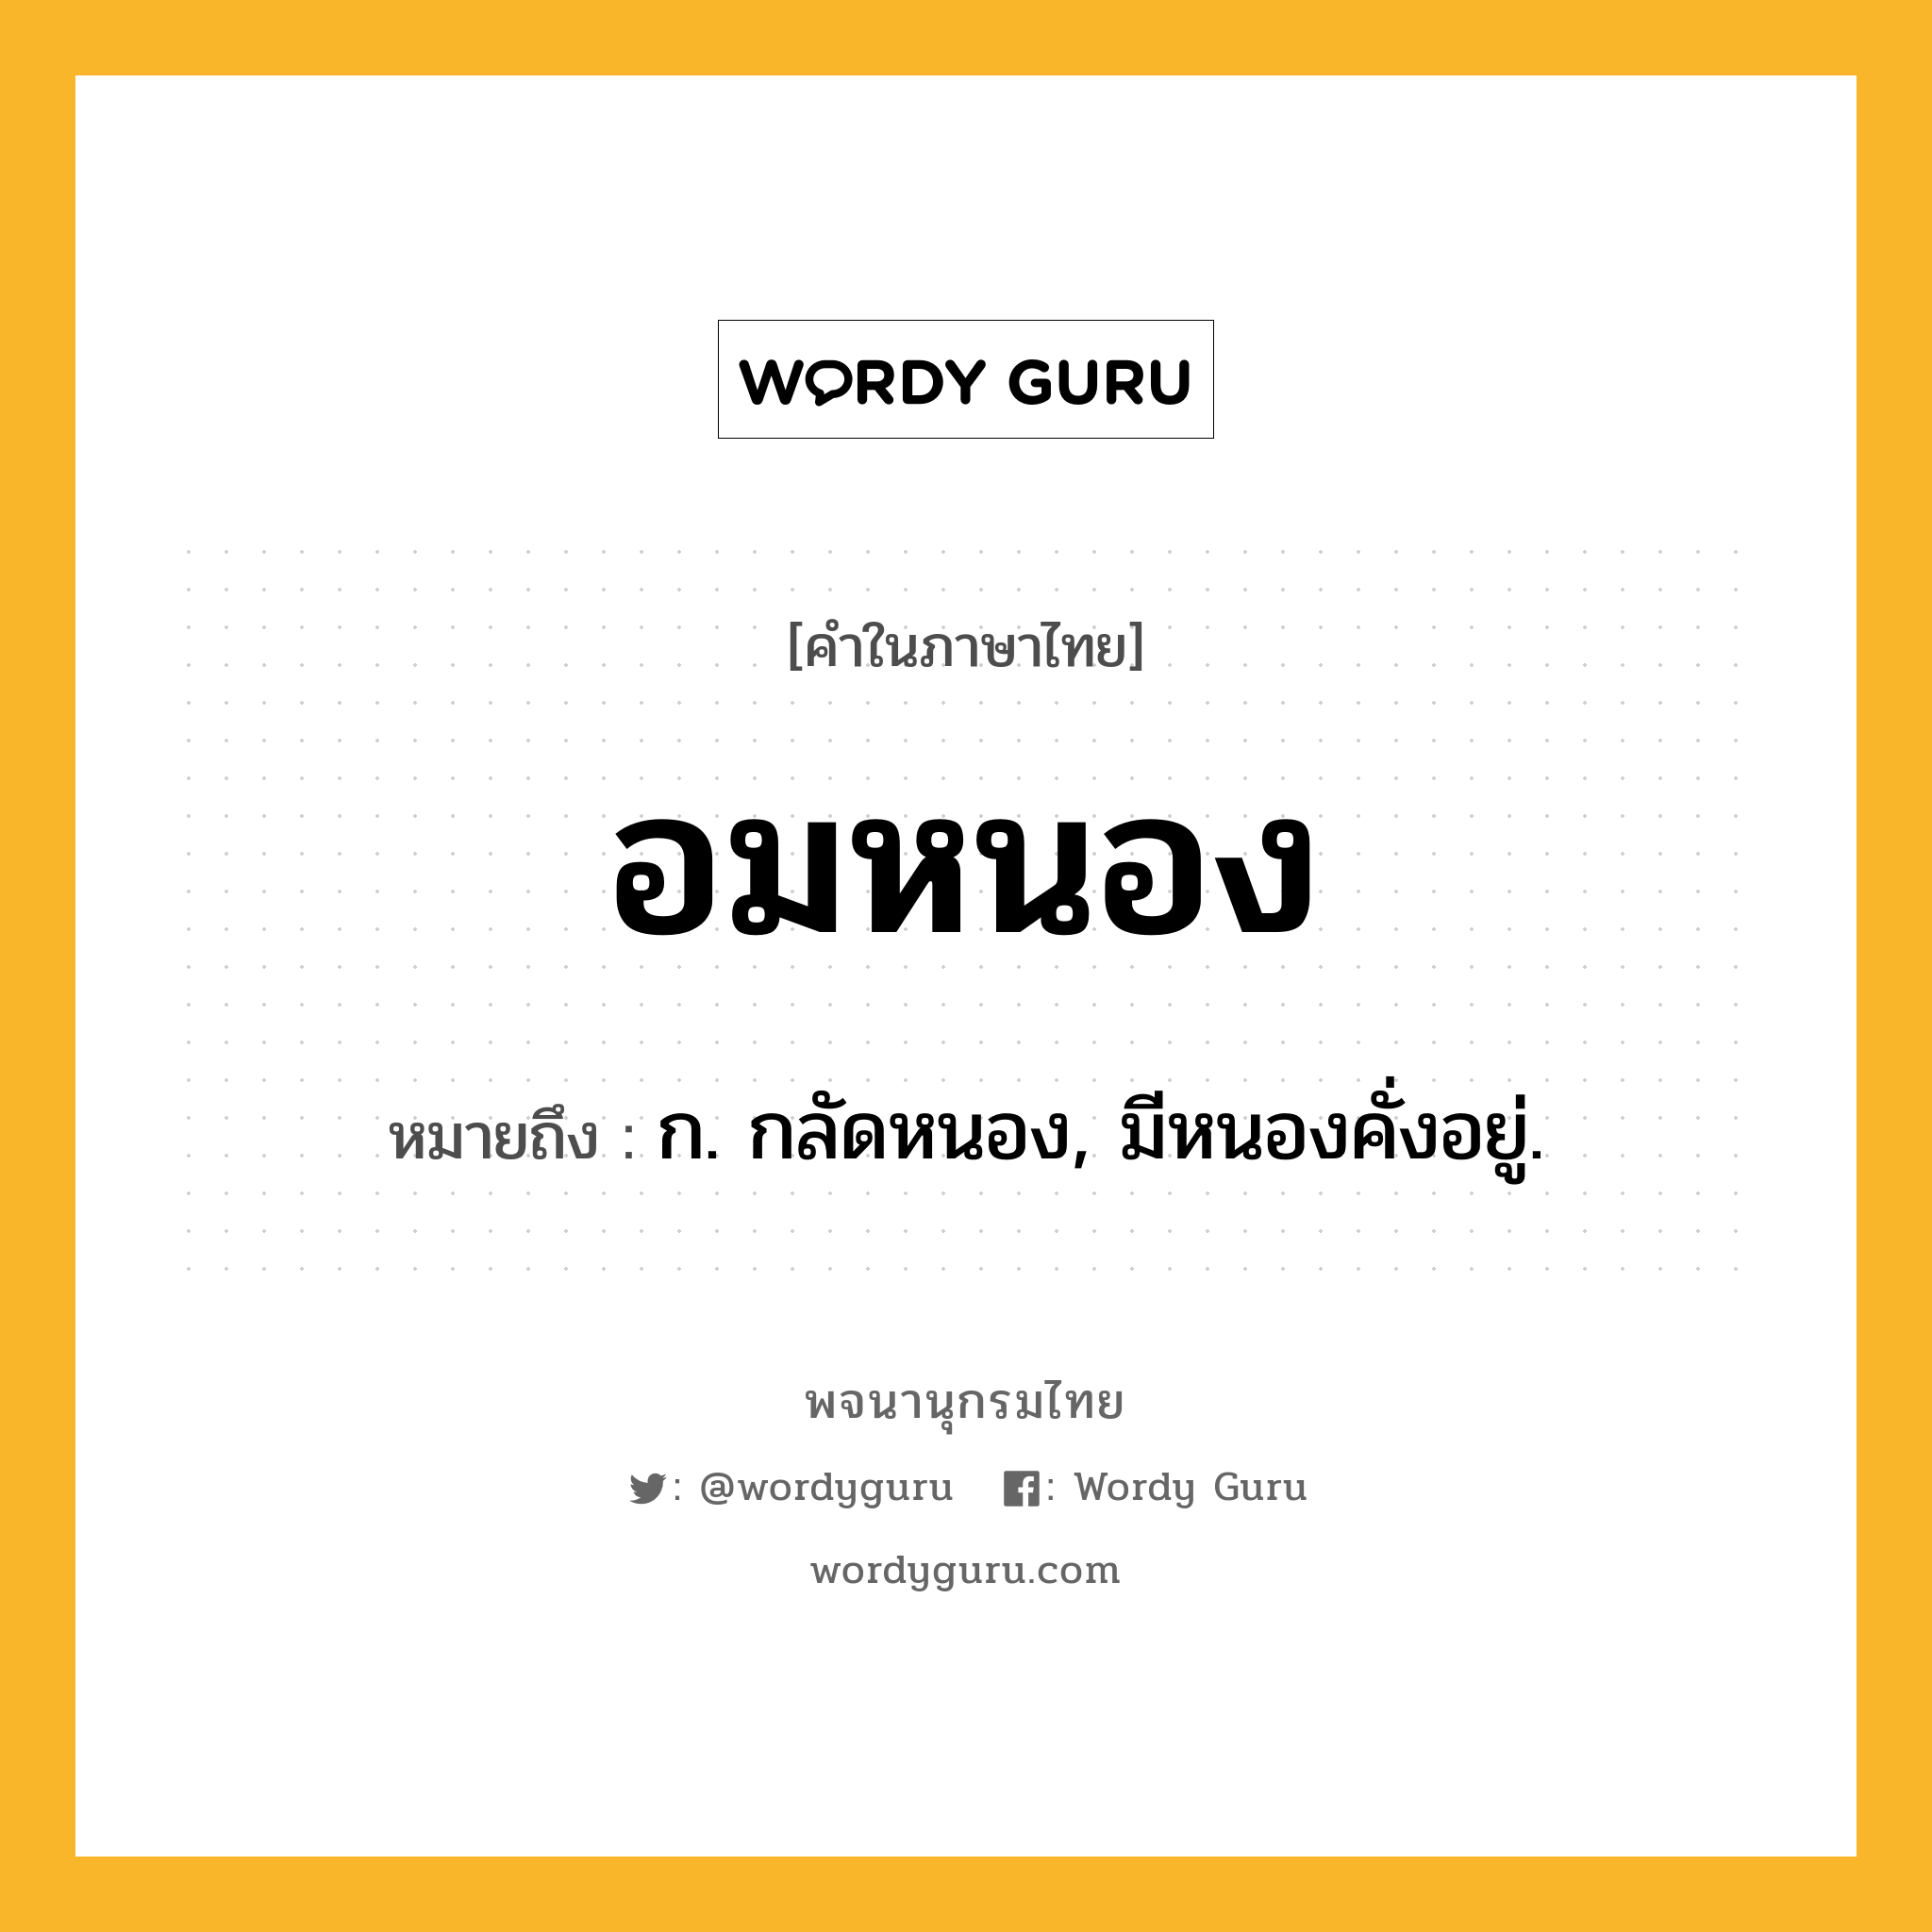 อมหนอง ความหมาย หมายถึงอะไร?, คำในภาษาไทย อมหนอง หมายถึง ก. กลัดหนอง, มีหนองคั่งอยู่.